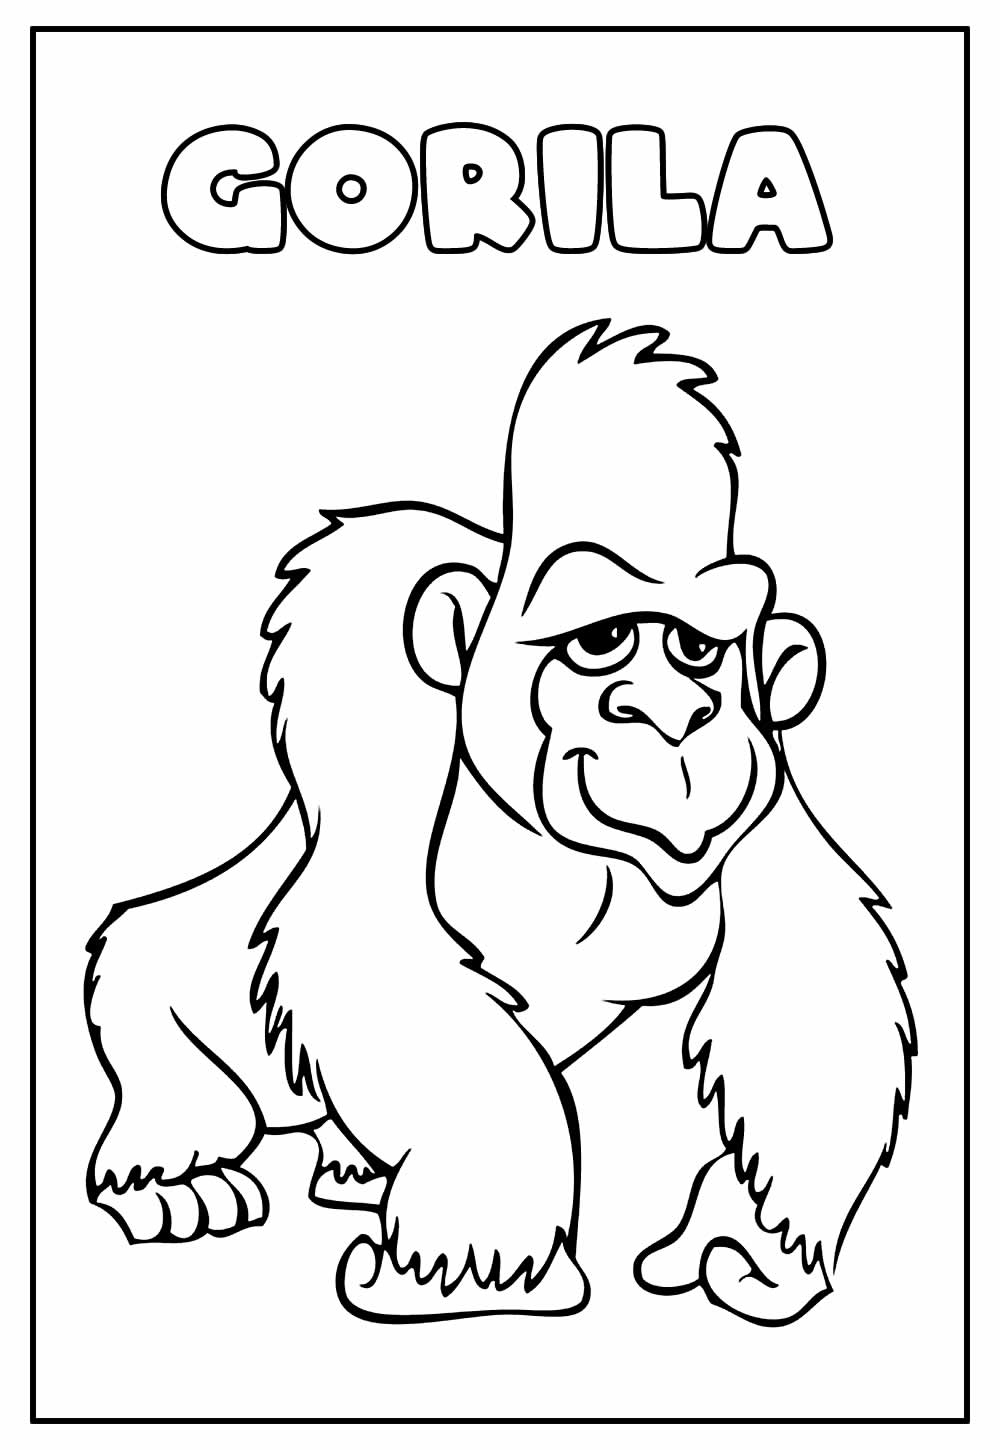 Desenho Educativo de Gorila para colorir